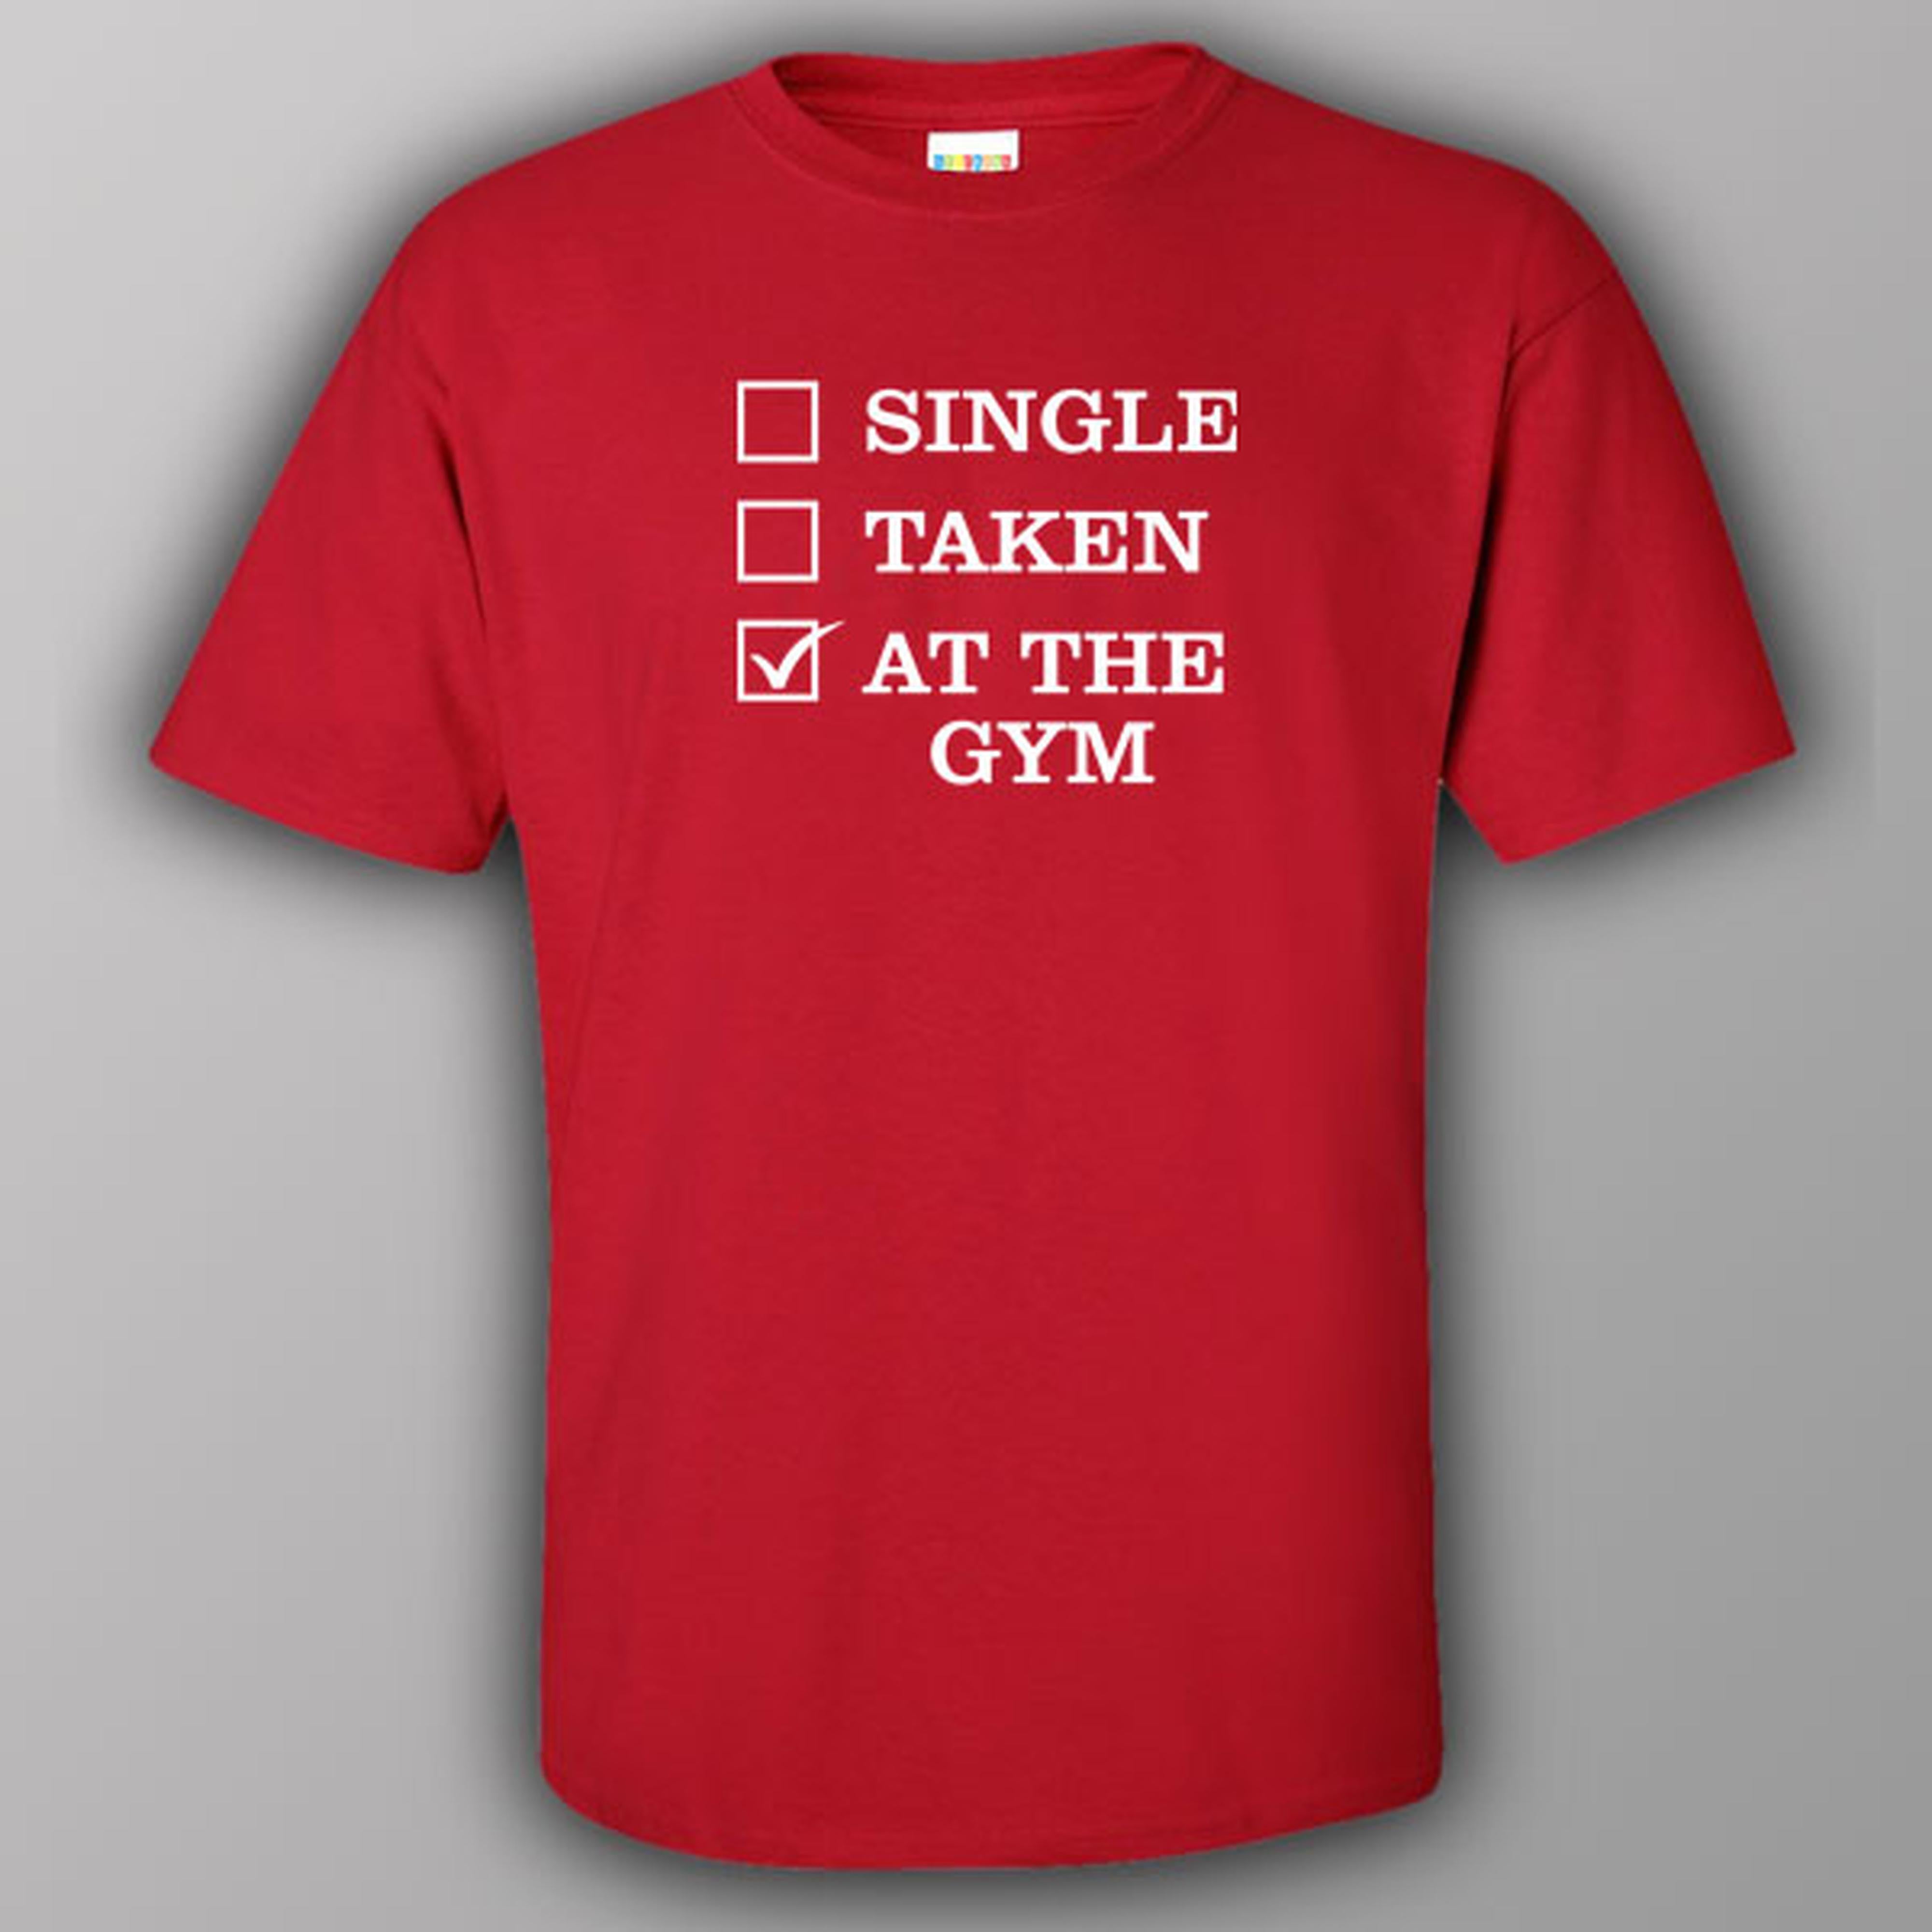 Single - Taken - At the gym - T-shirt